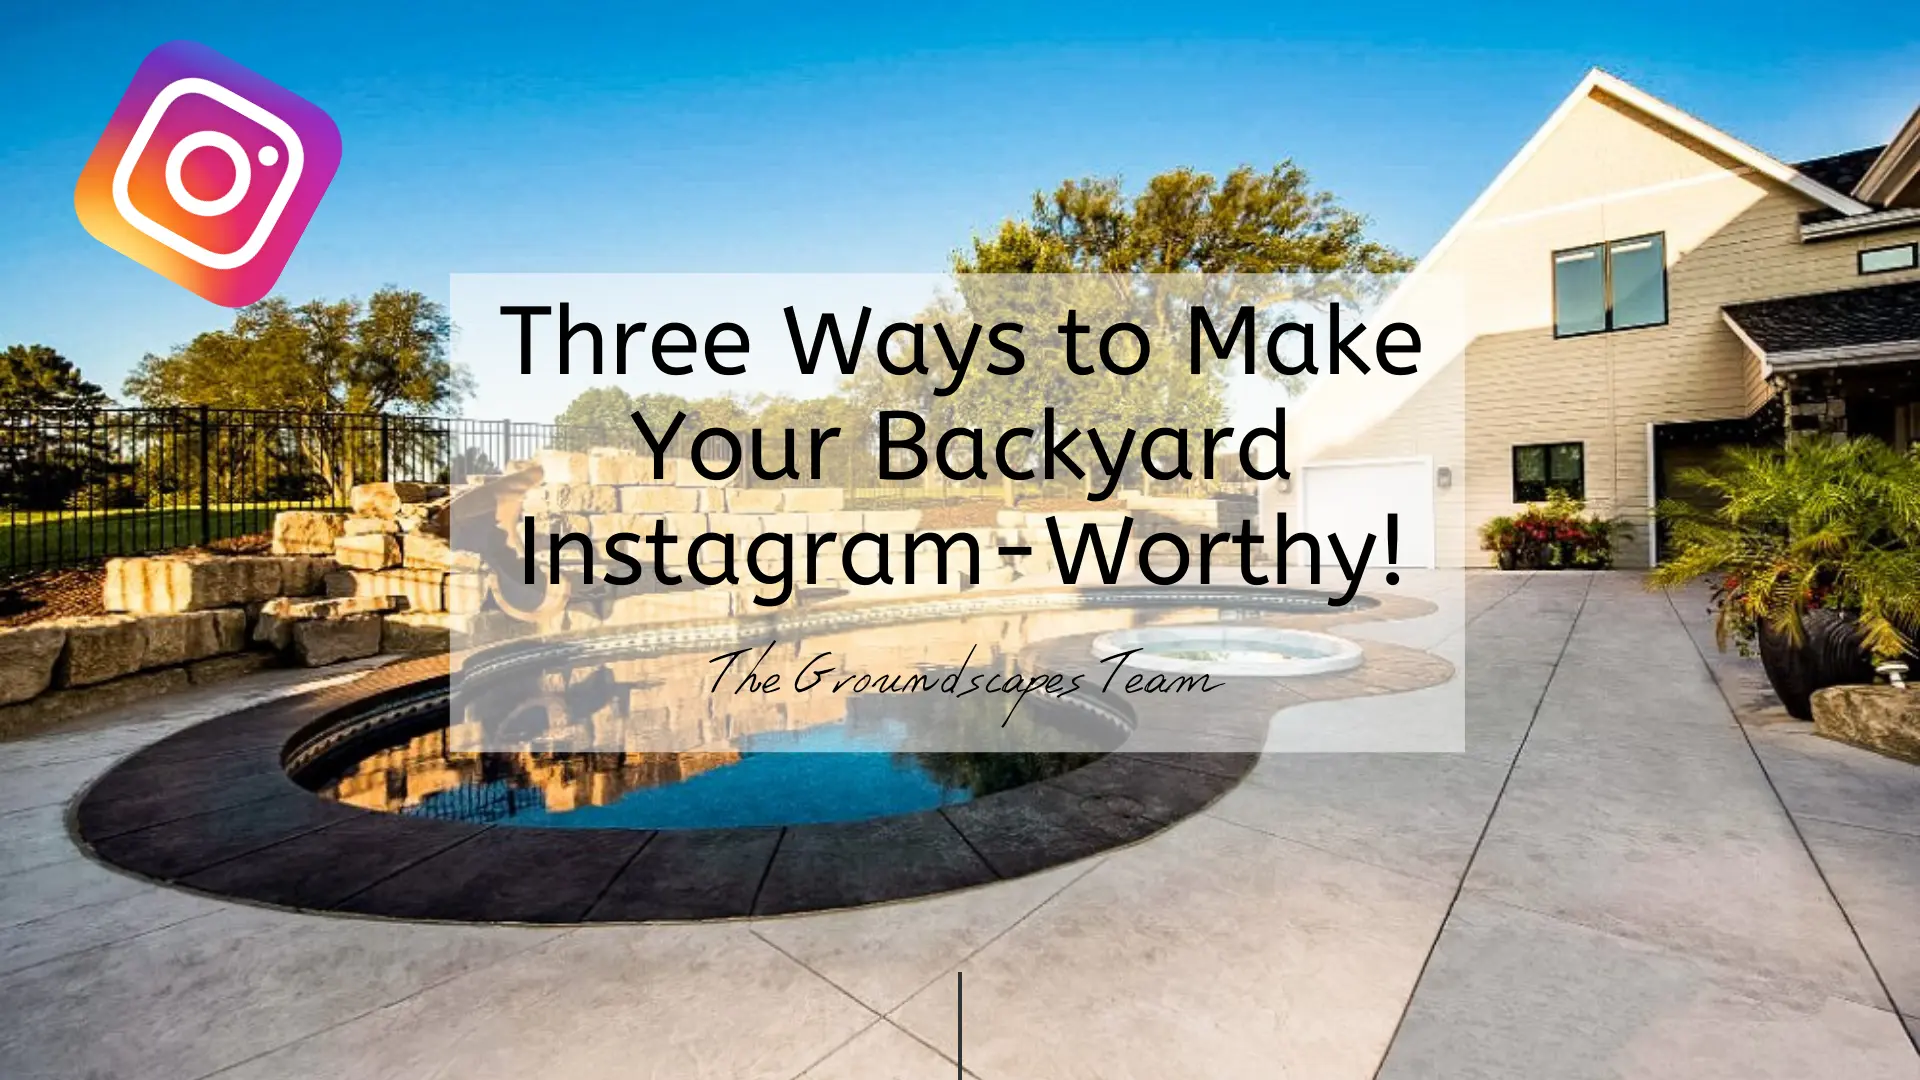 Three Ways to Make Your Backyard Instagram-Worthy!